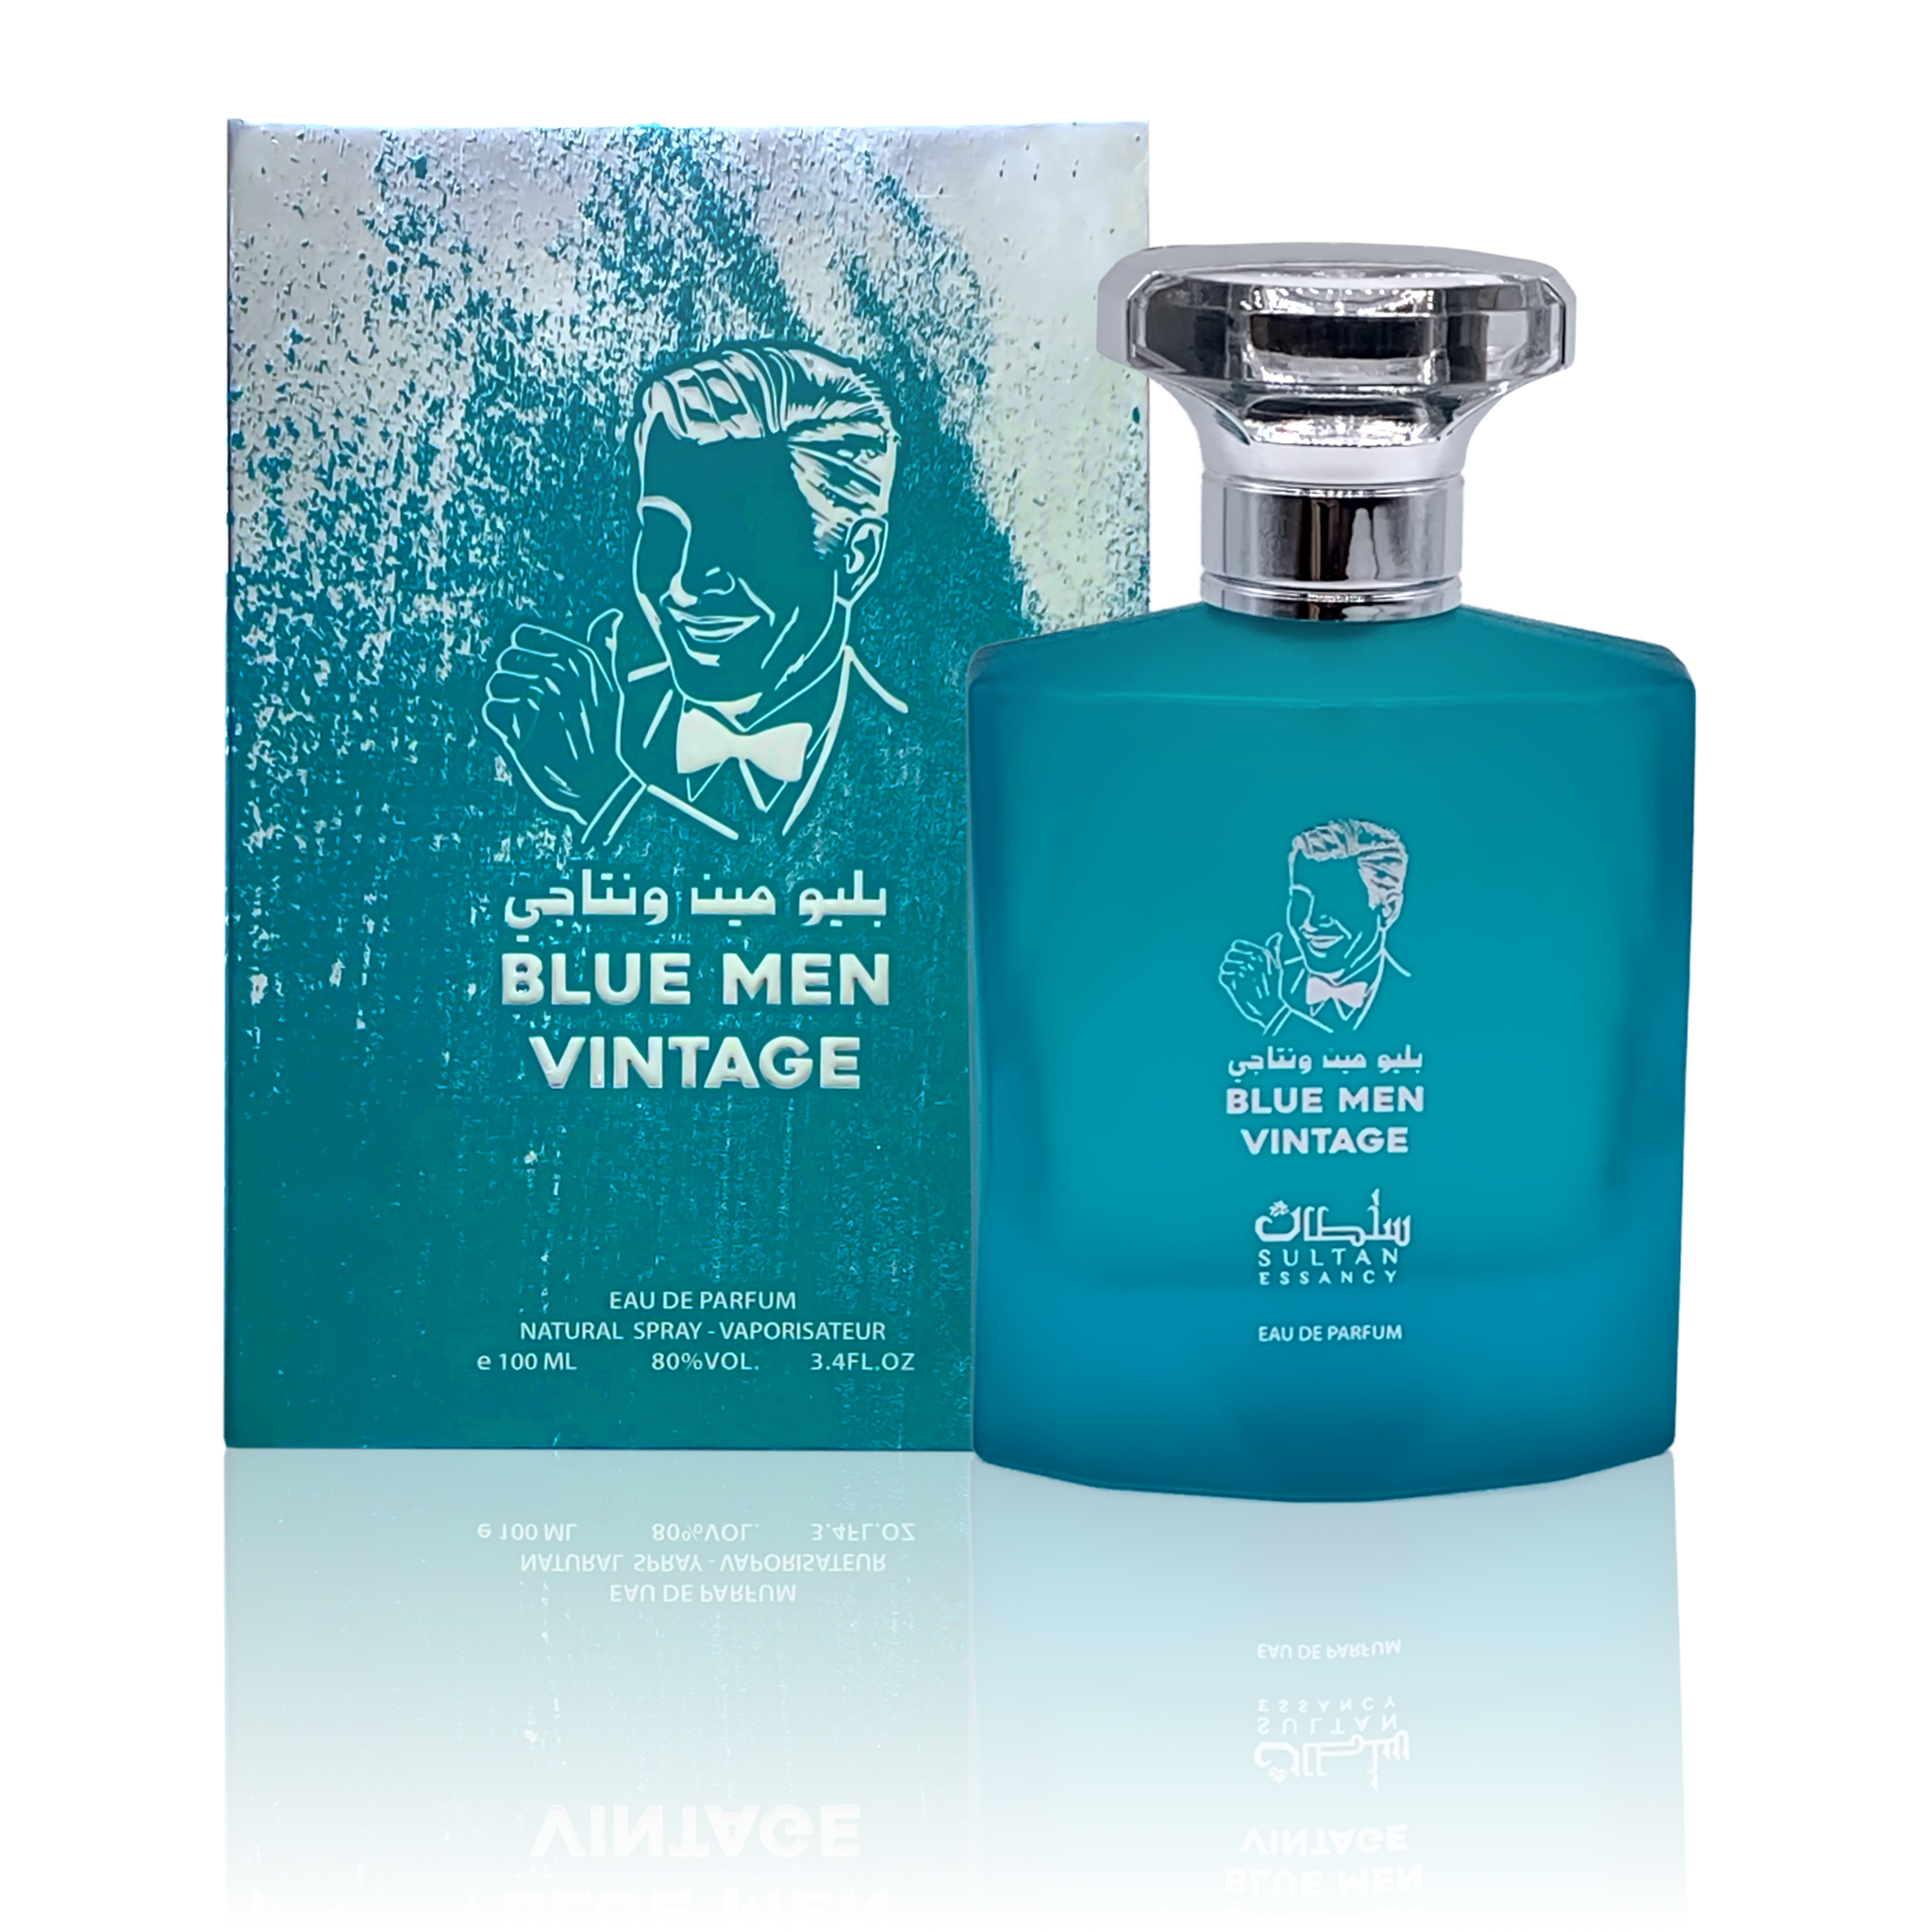 Blue Men Vintage Sultan Essancy Parfüm Eau de Parfum Männer